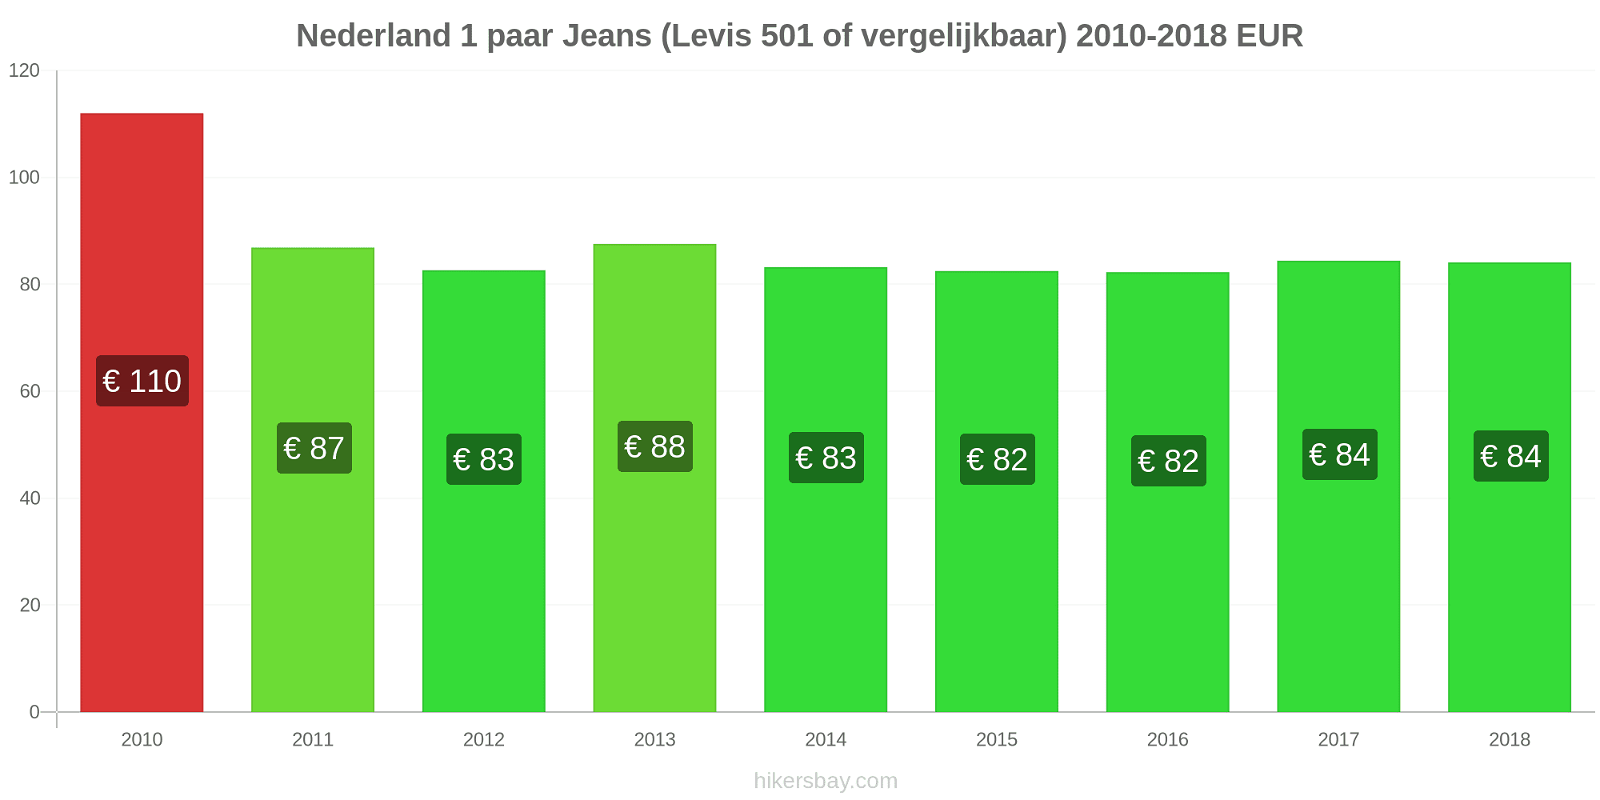 Nederland prijswijzigingen 1 paar jeans (Levis 501 of vergelijkbaar) hikersbay.com